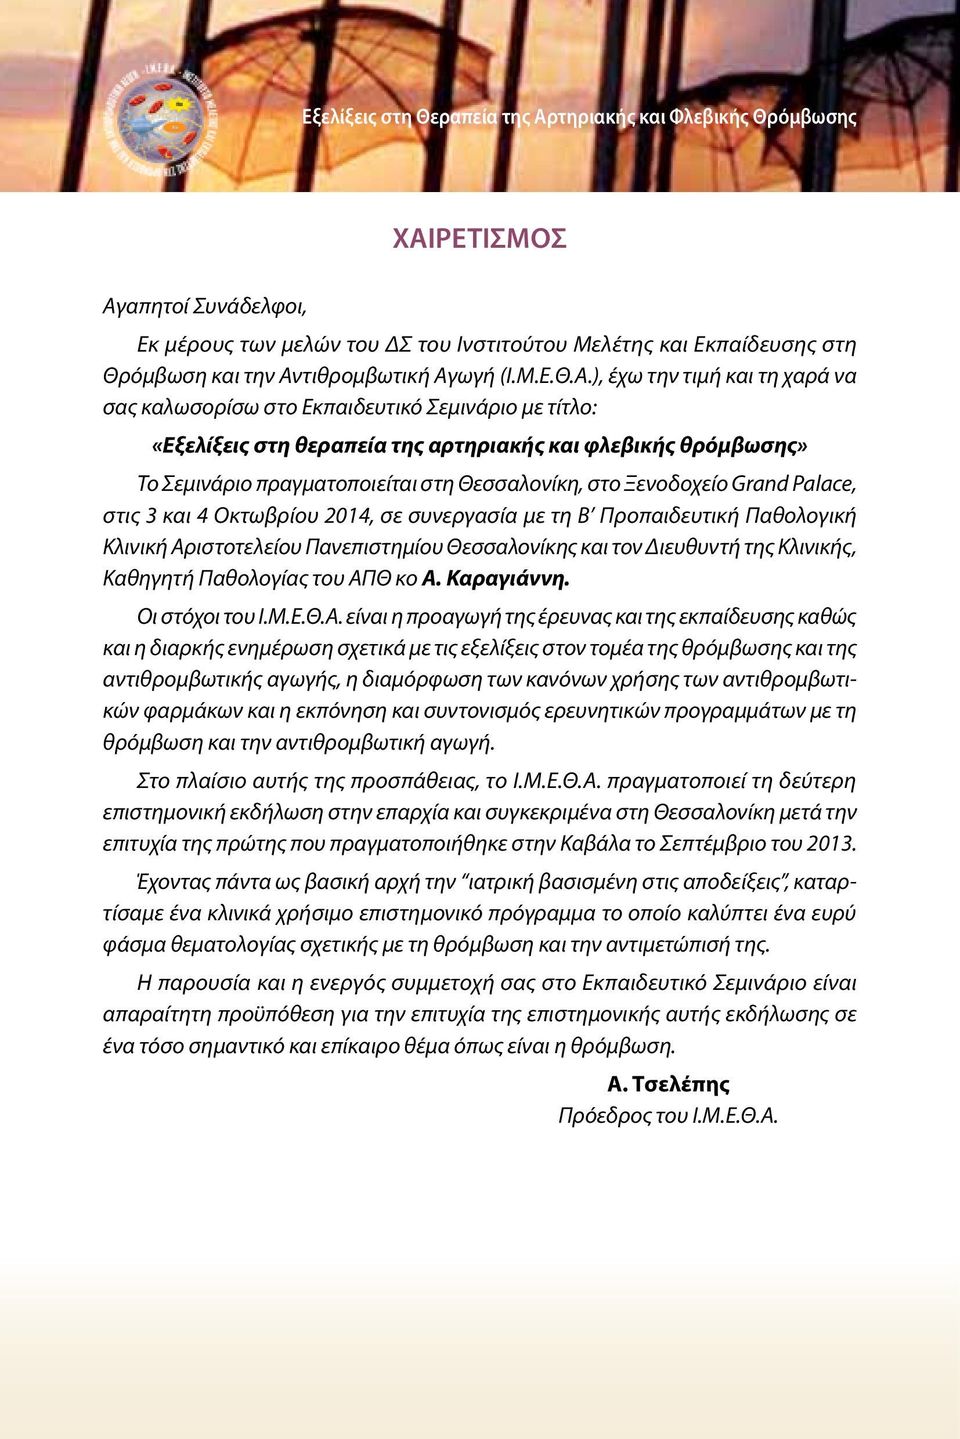 Θεσσαλονίκη, στο Ξενοδοχείο Grand Palace, στις 3 και 4 Οκτωβρίου 2014, σε συνεργασία με τη Β Προπαιδευτική Παθολογική Κλινική Αριστοτελείου Πανεπιστημίου Θεσσαλονίκης και τον Διευθυντή της Κλινικής,